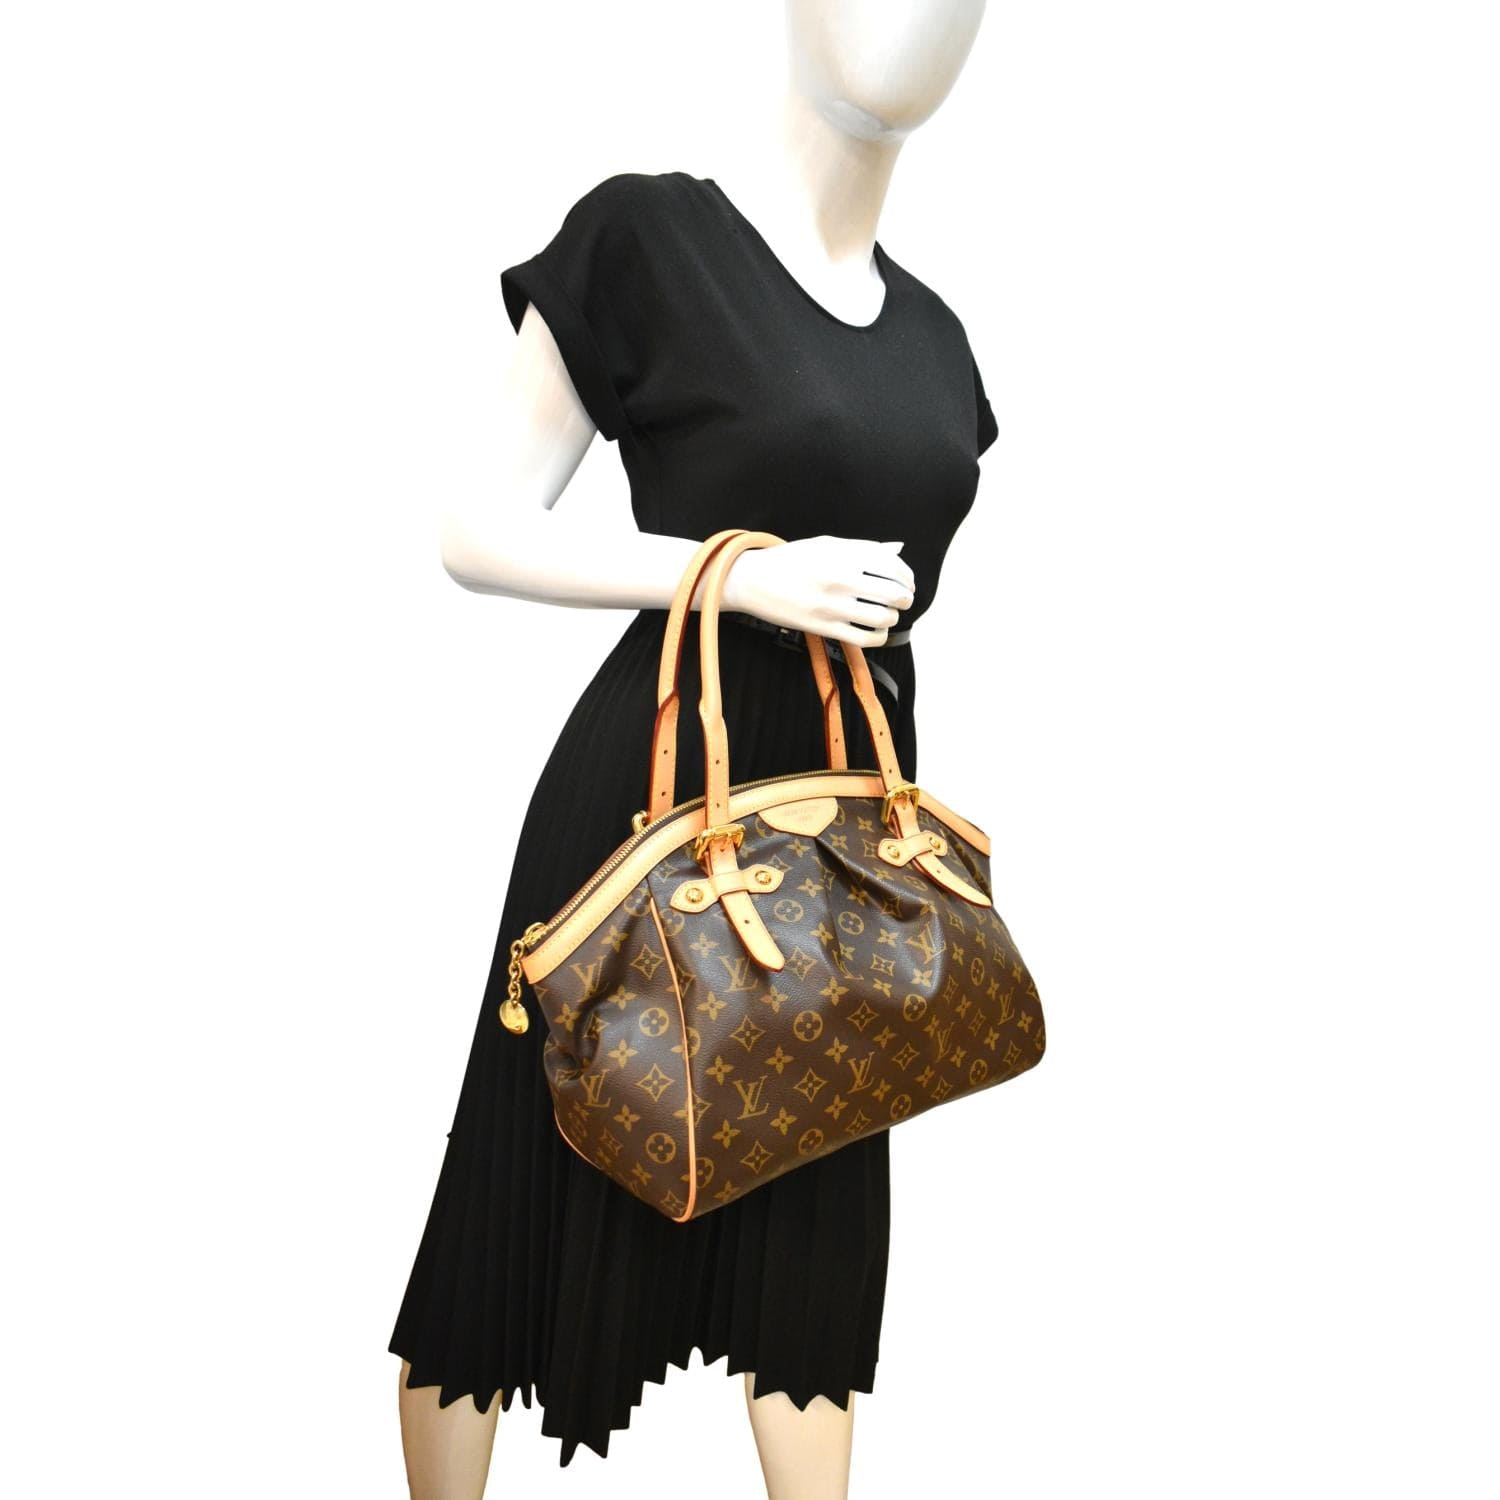 Tivoli handbag Louis Vuitton Brown in Cotton - 32778731